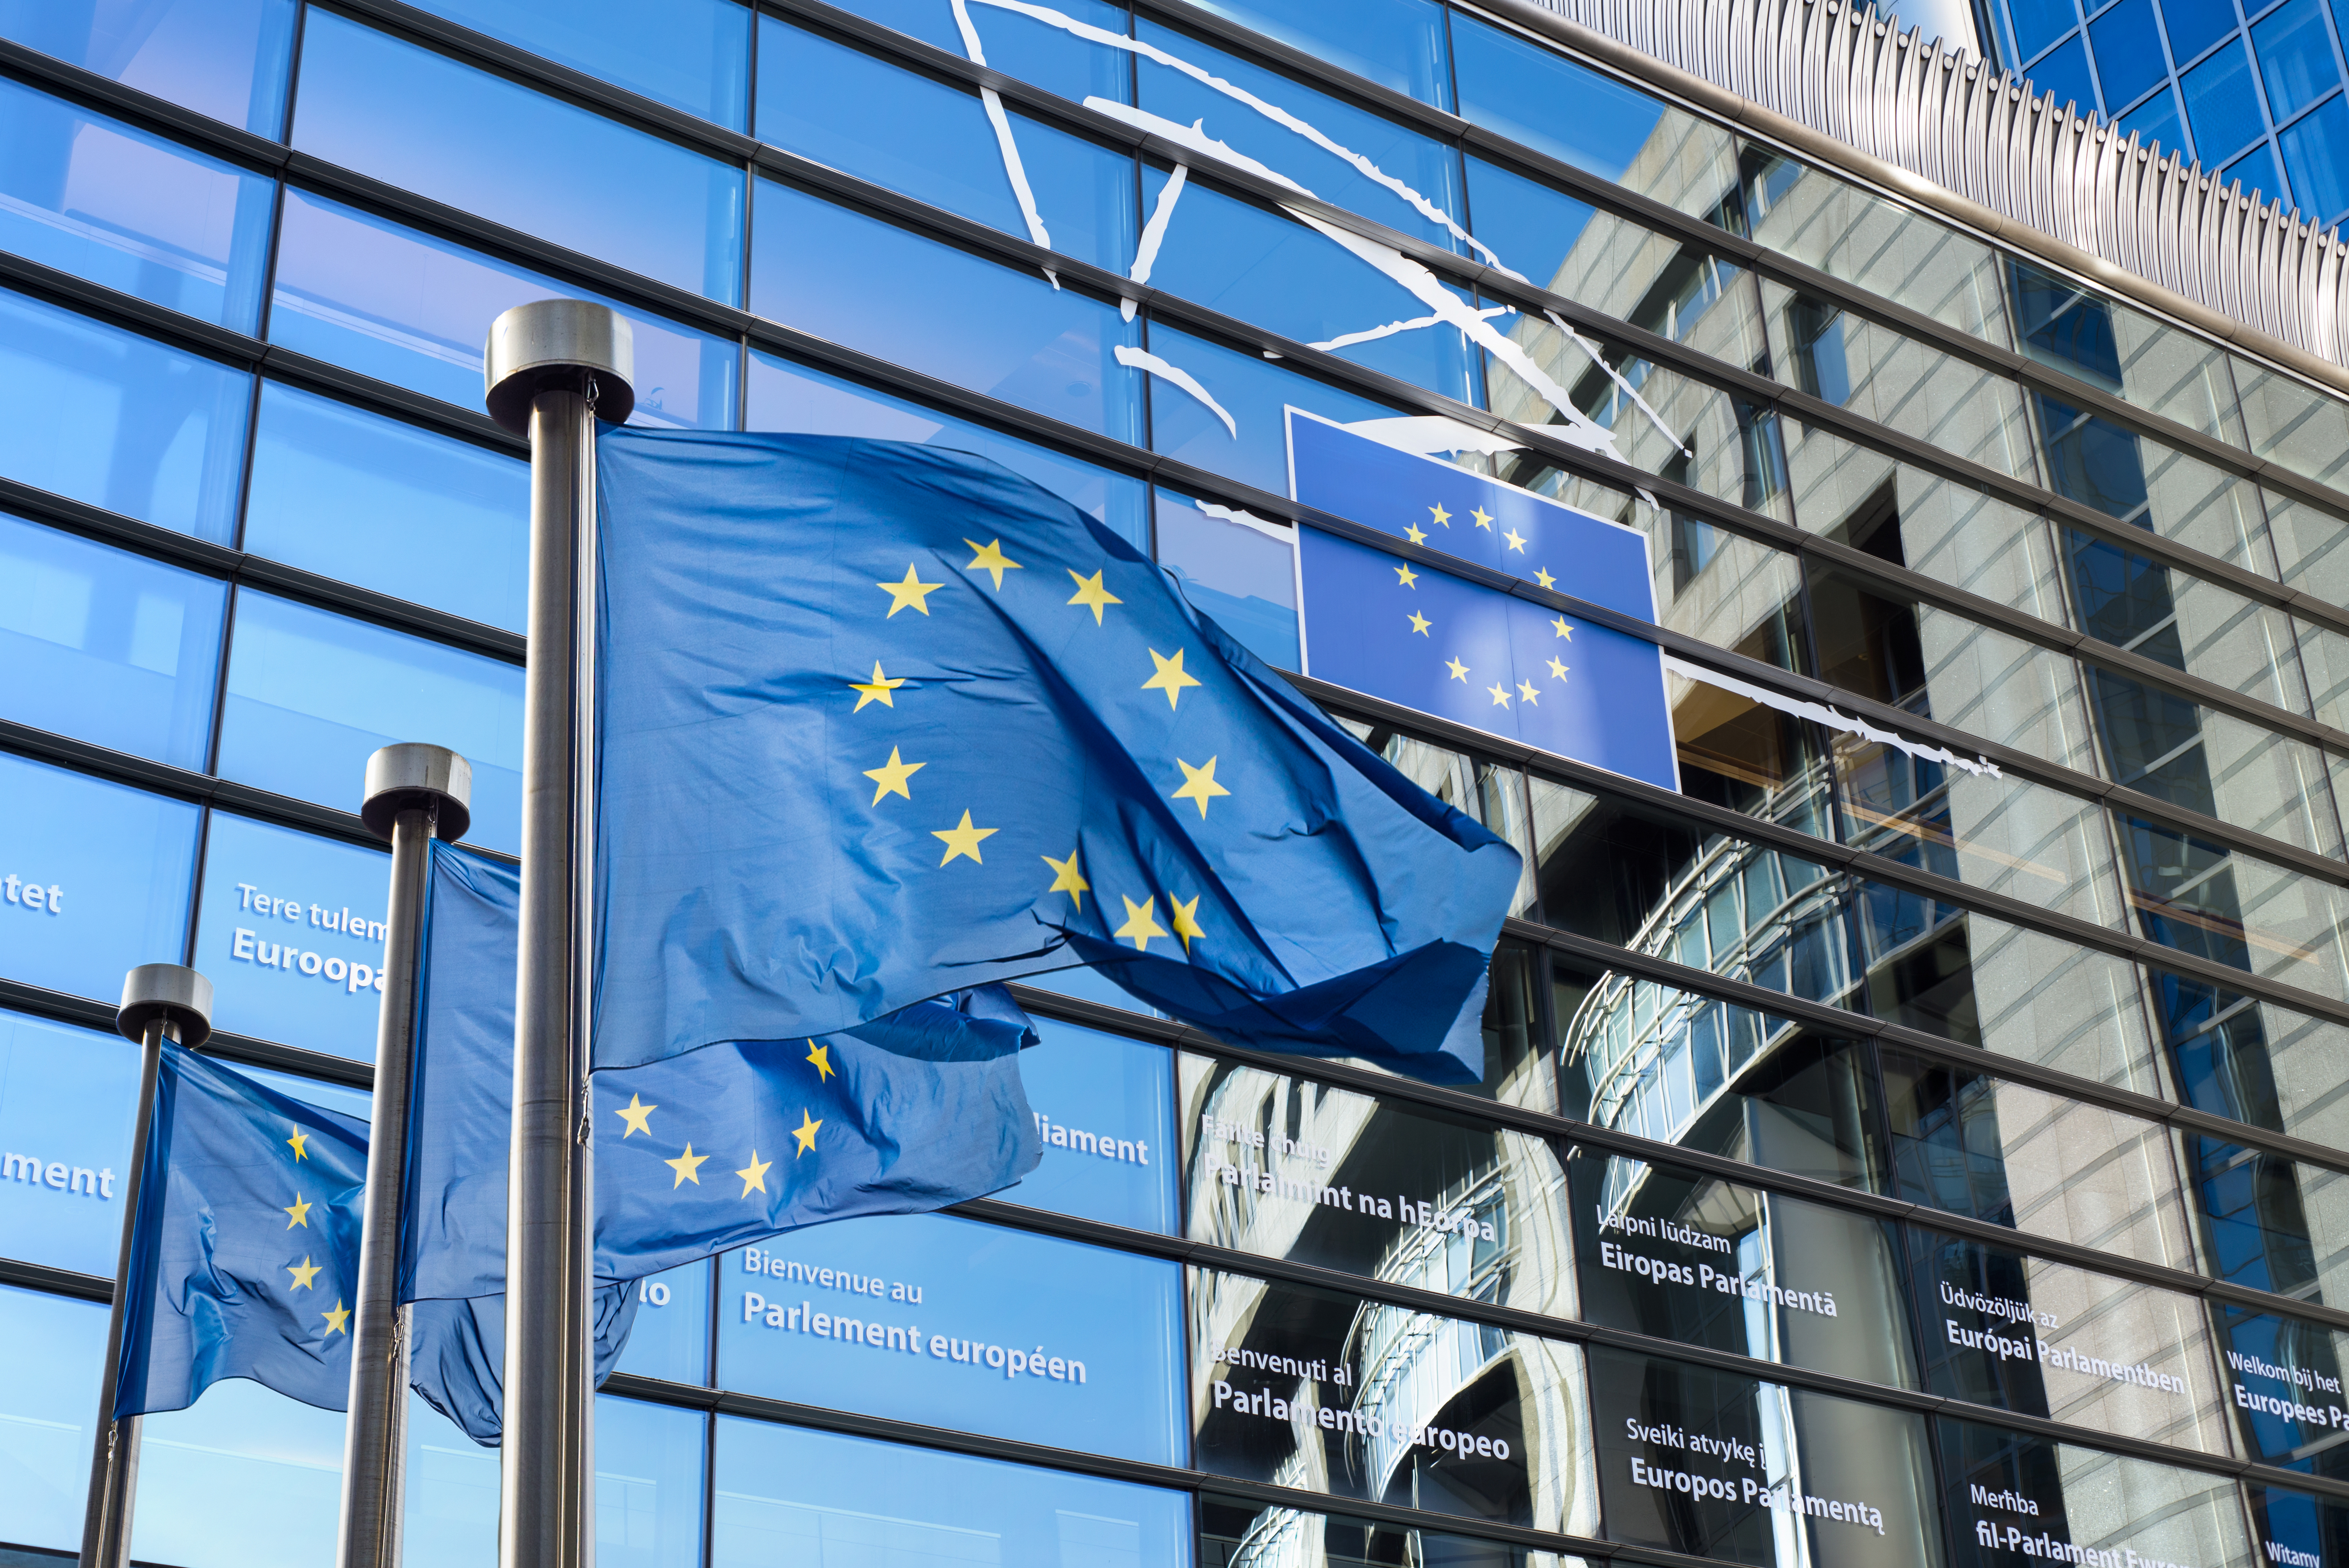 Arvamus 01/2022 (vastavalt Euroopa Liidu toimimise lepingu artikli 287 lõikele 4) komisjoni ettepaneku kohta võtta vastu määrus, mis käsitleb Euroopa tasandi erakondade ja Euroopa tasandi poliitiliste sihtasutuste põhikirja ning rahastamist